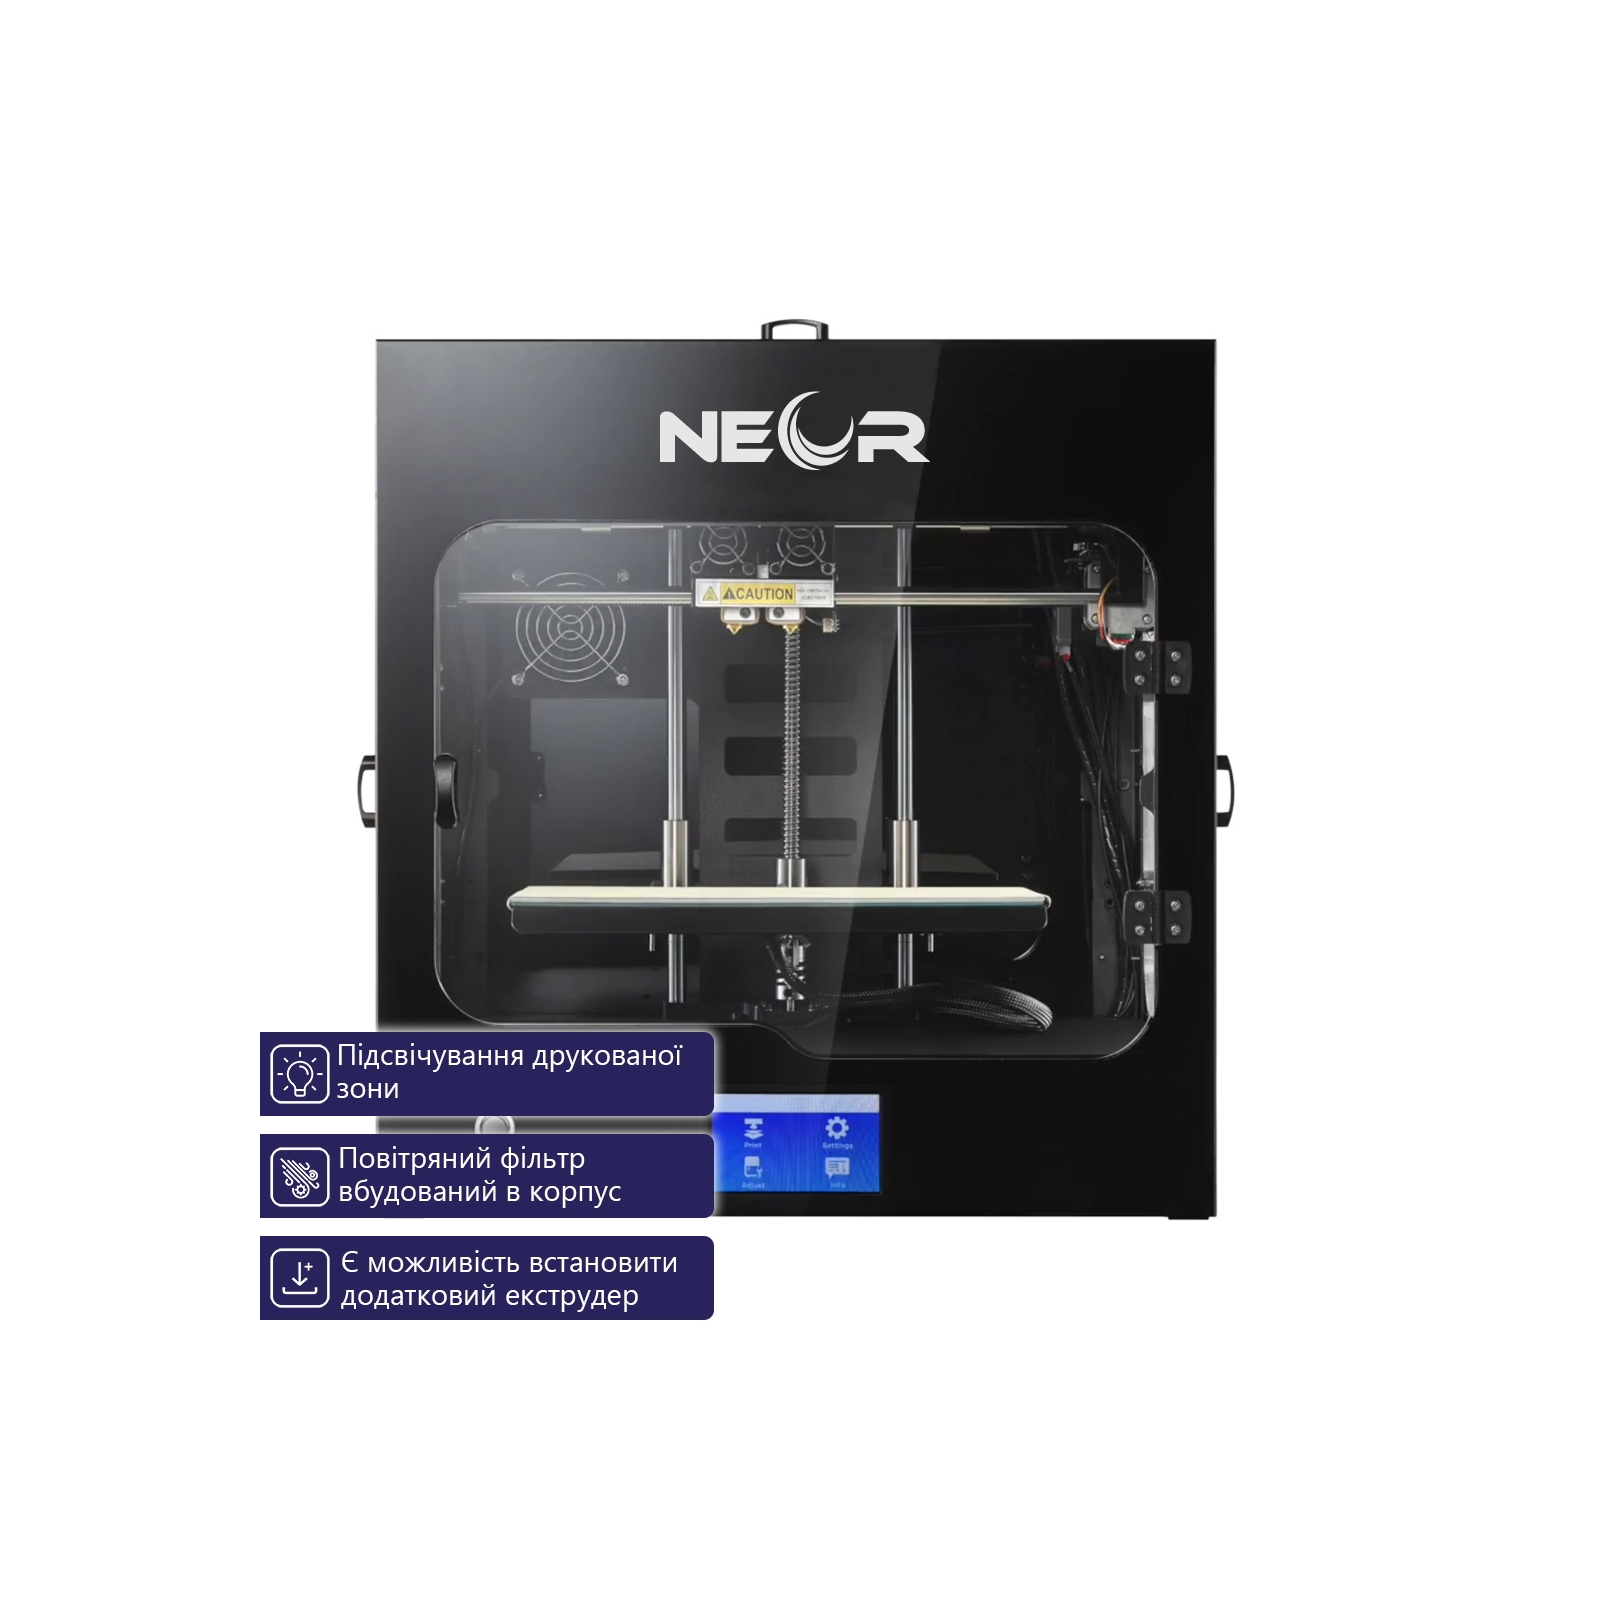 3D-принтер Neor Professional изображение 4